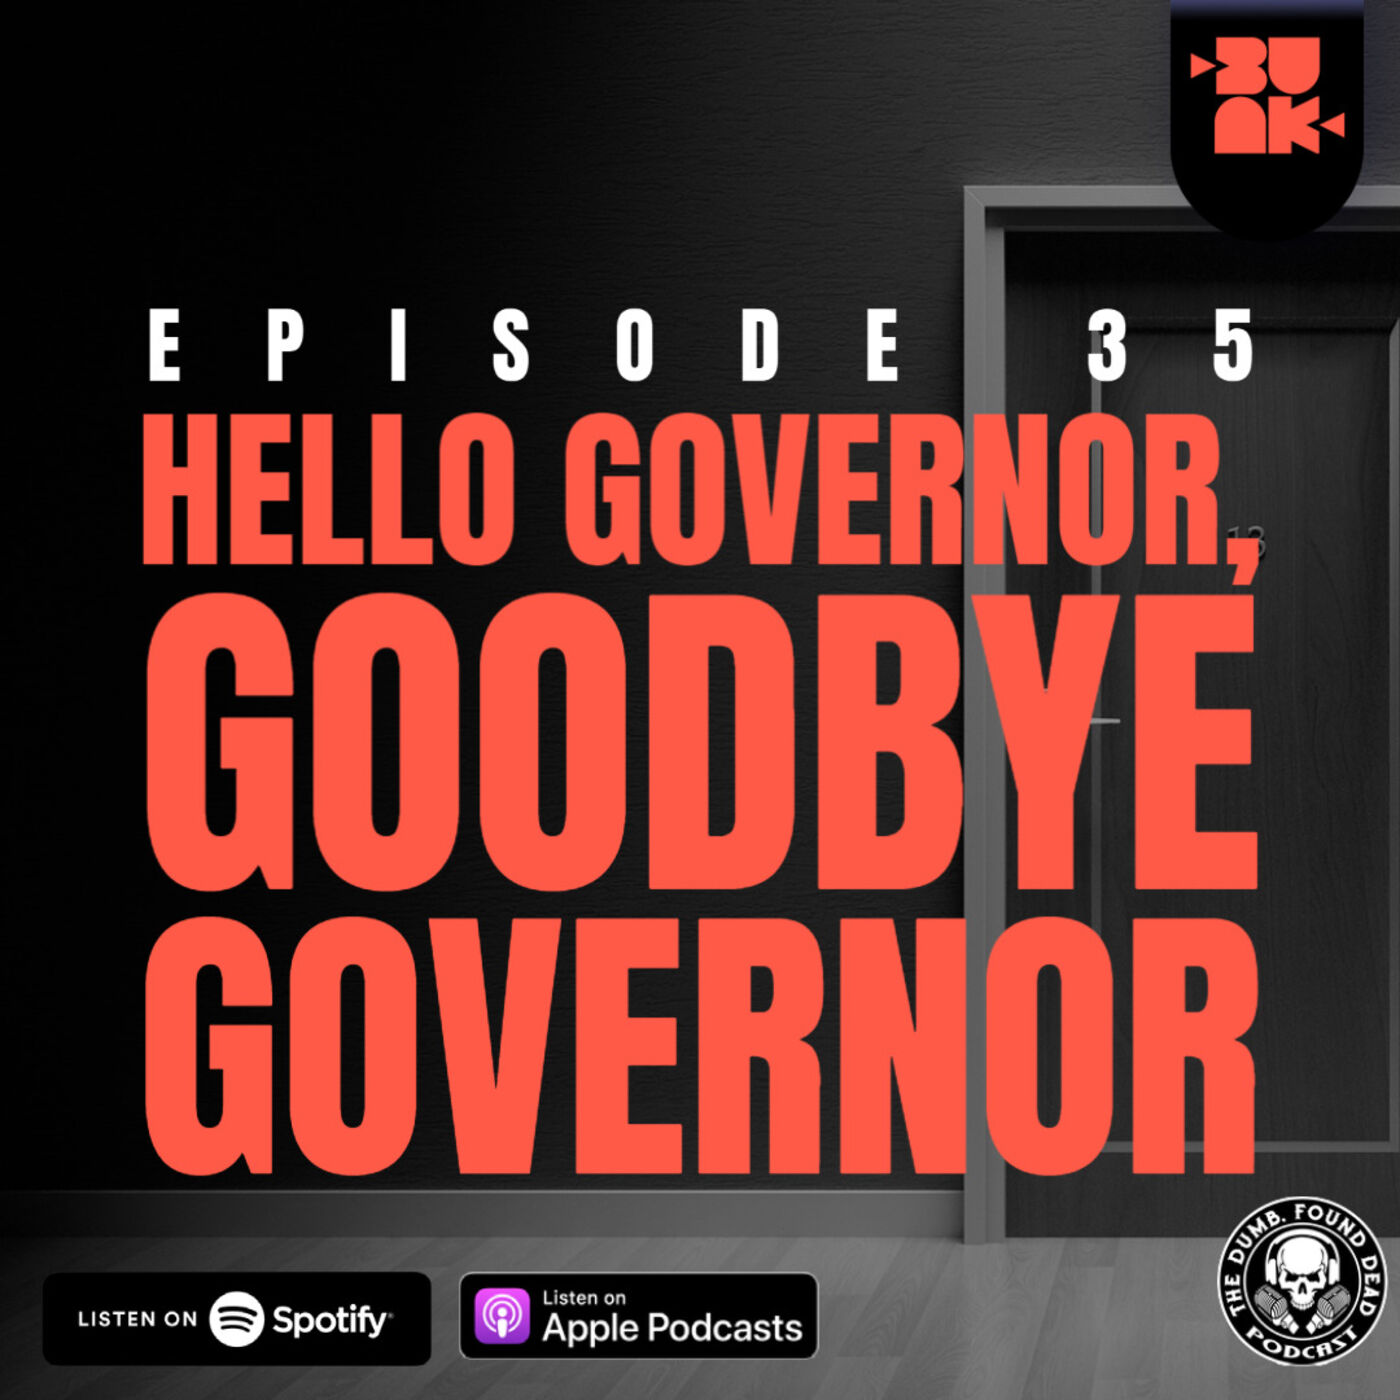 Hello Governor, Goodbye Governor